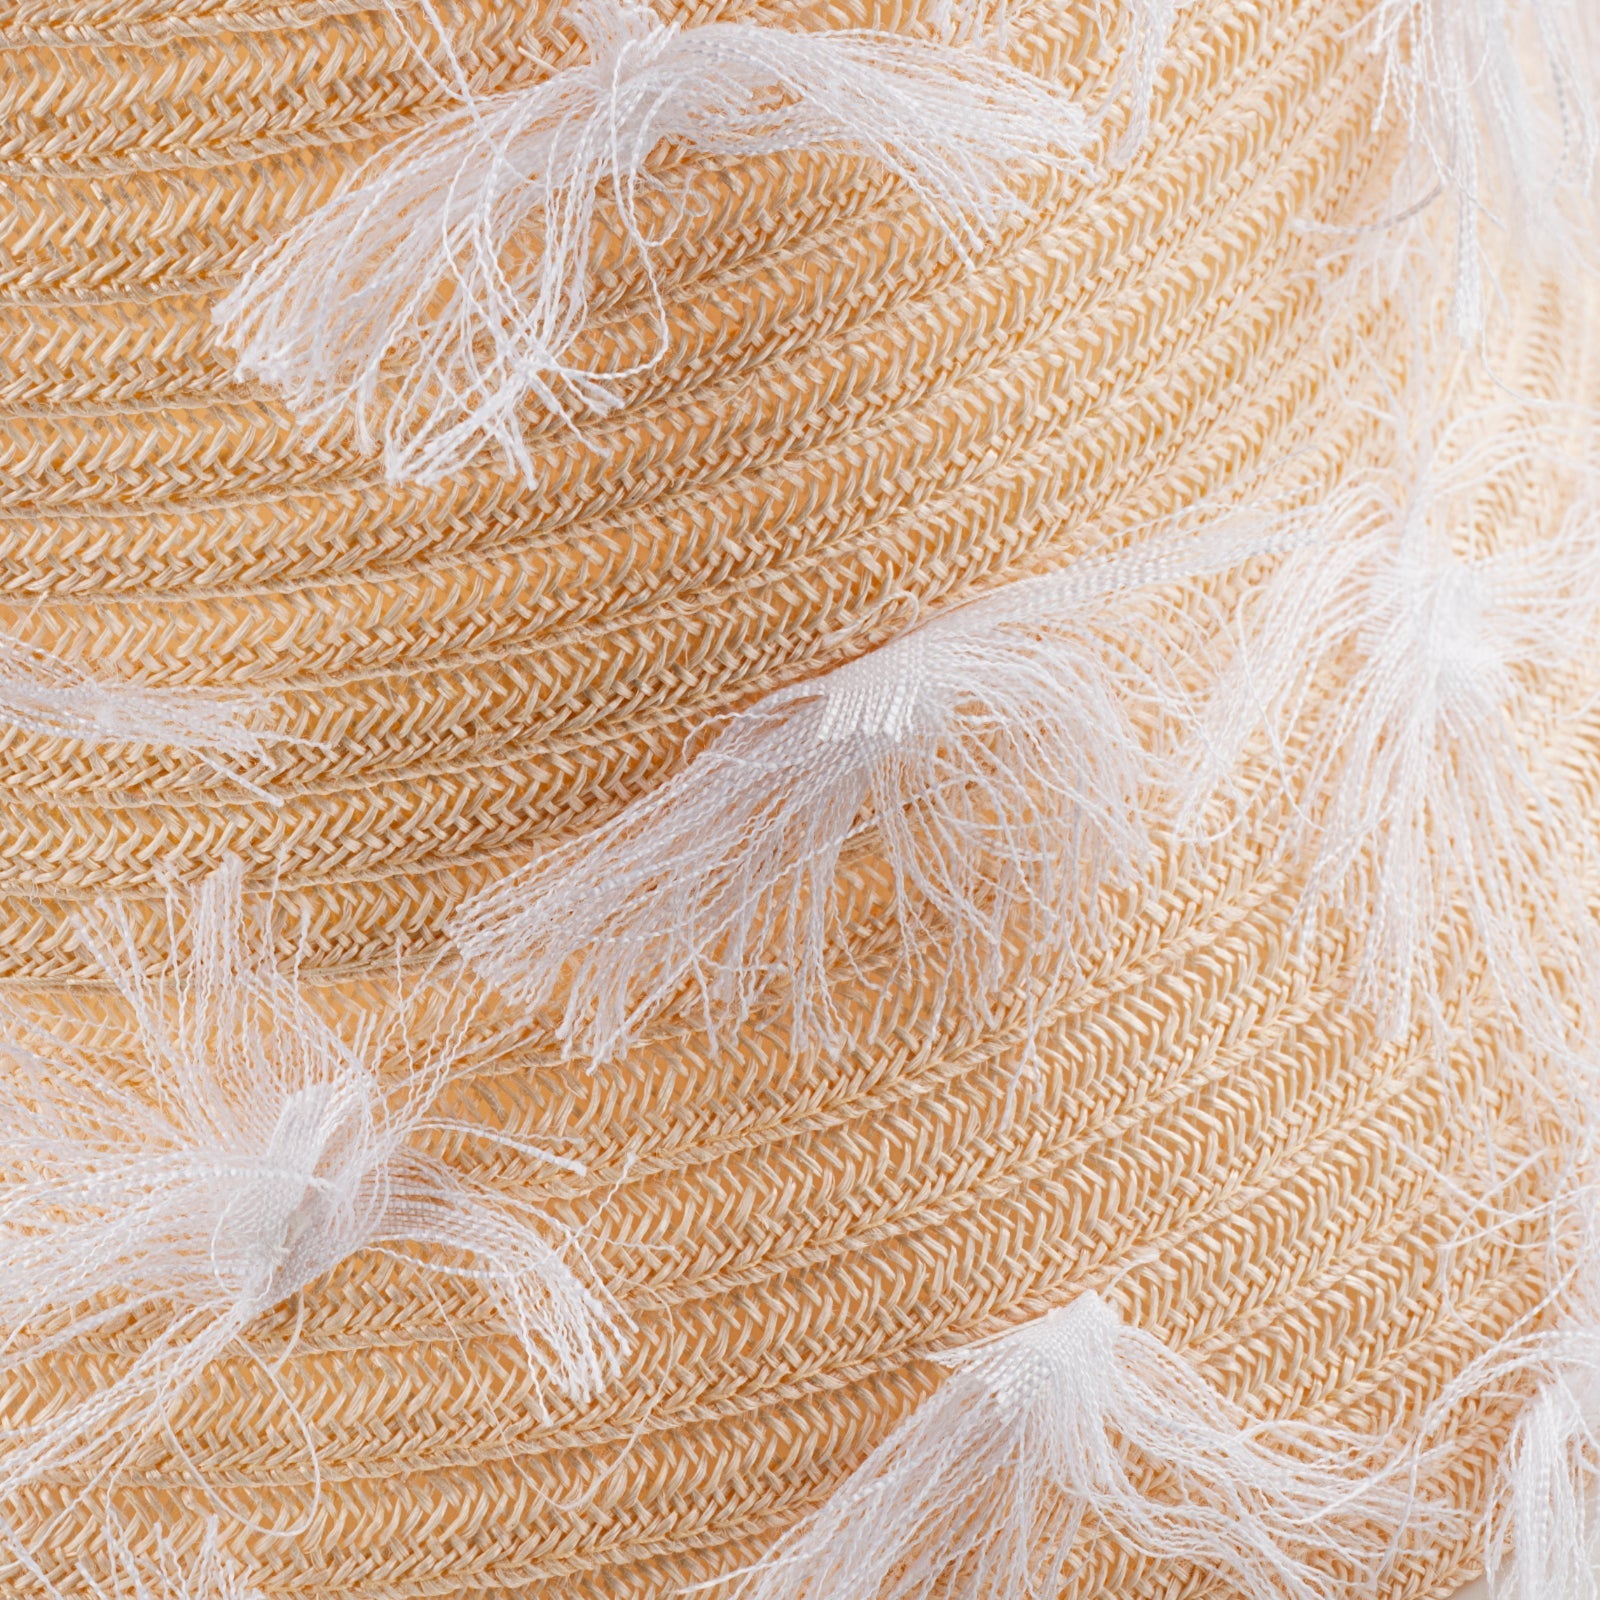 Cloche Bon Effiloche 100% Capri white straw hat detail